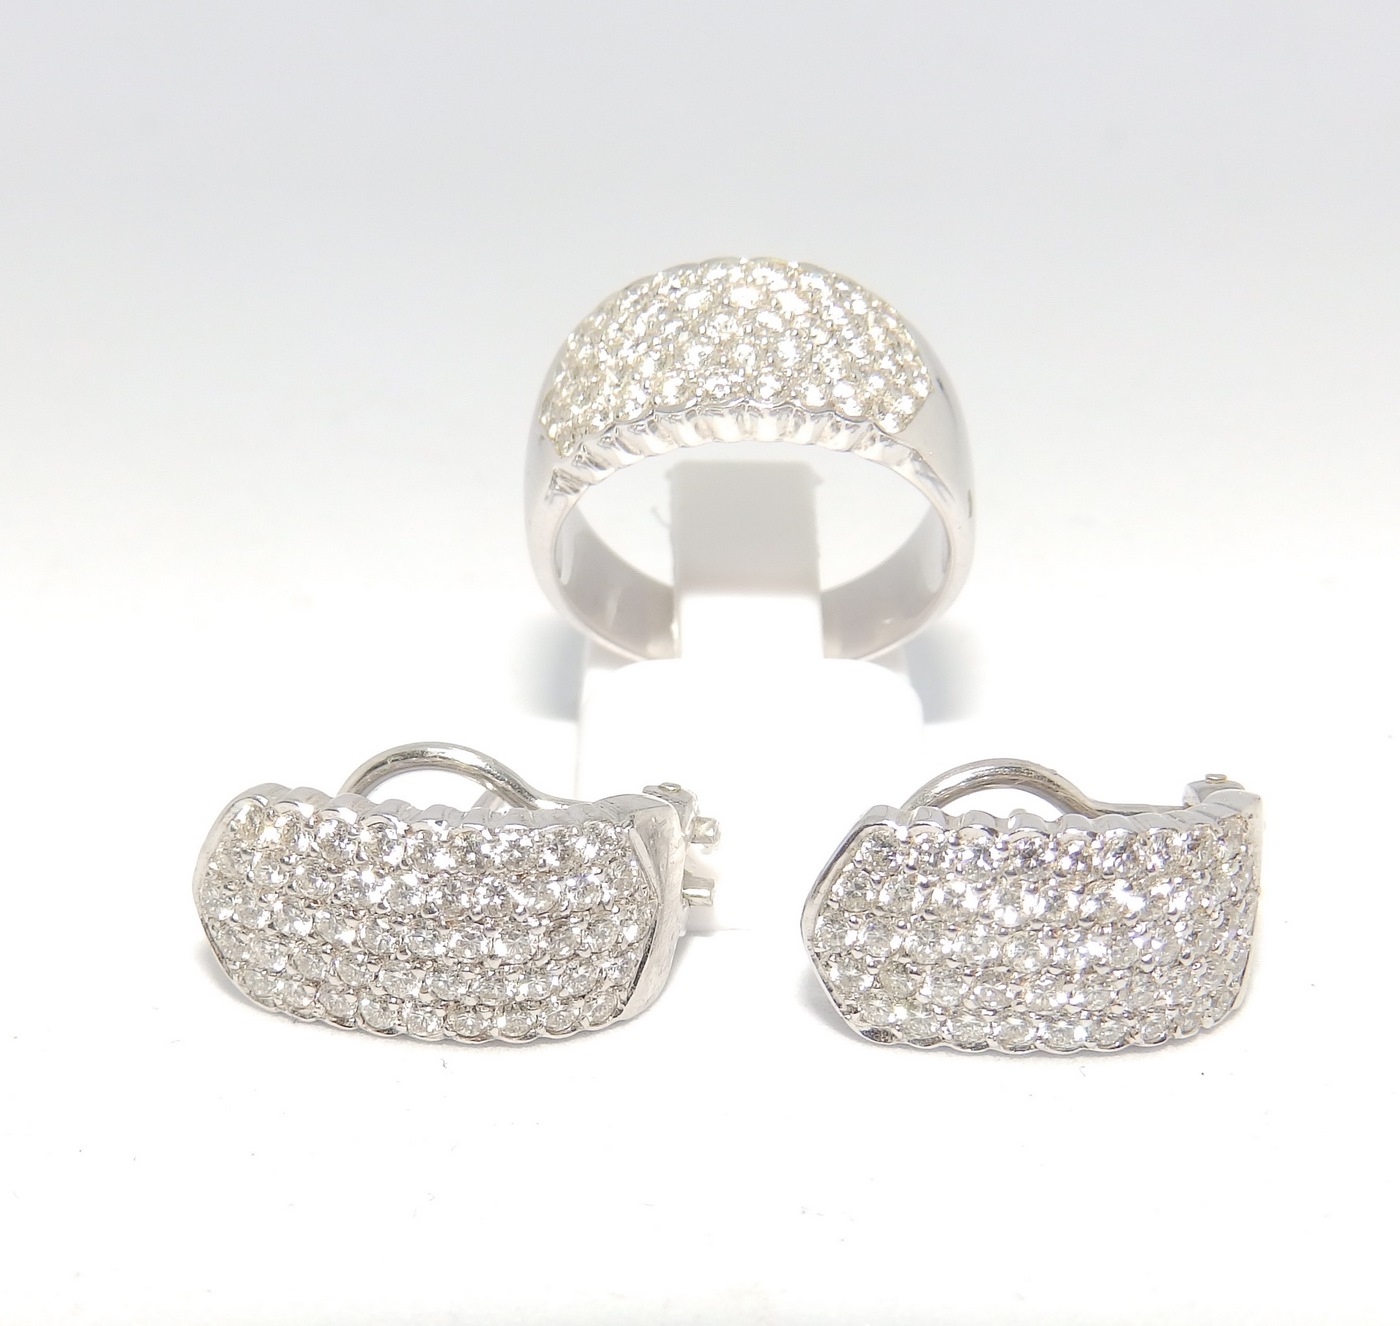 Conjunto de Sortija y Pendientes en Oro Blanco con 143 Diamantes talla Brillante de 3,50 ct. Color, H-I. Pureza, VS1-VS2.